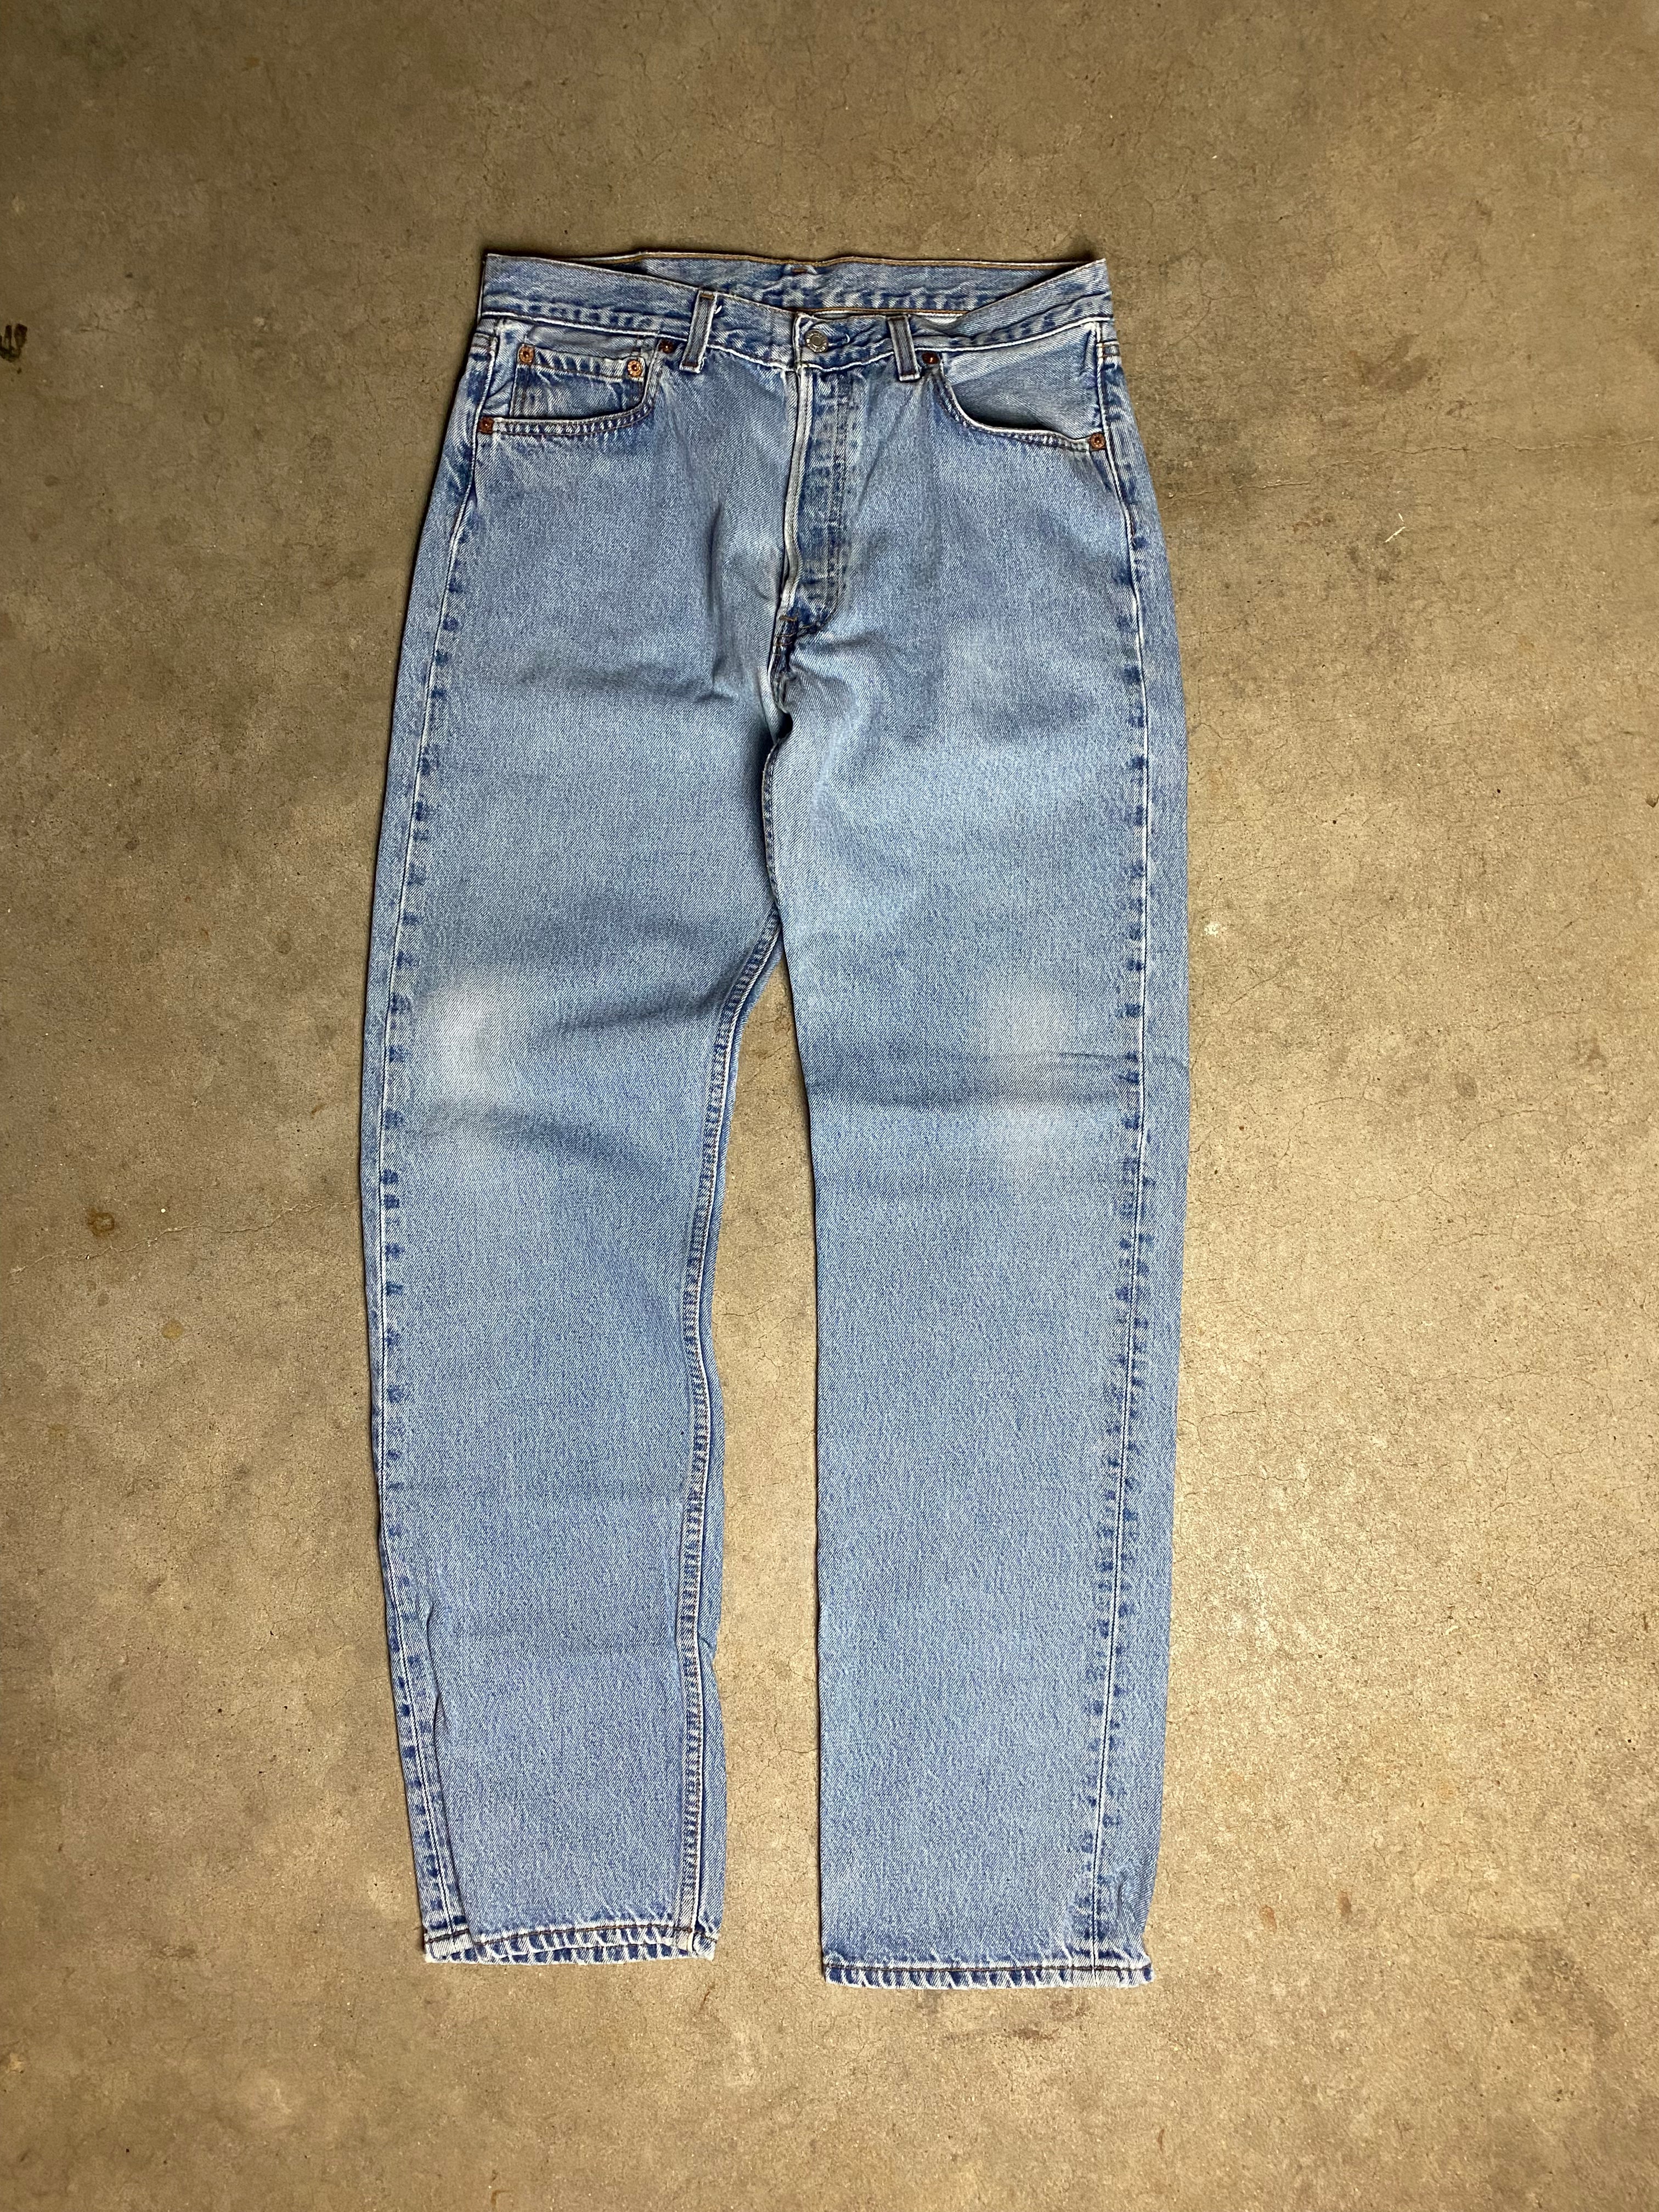 1997 Levi’s 501 Jeans